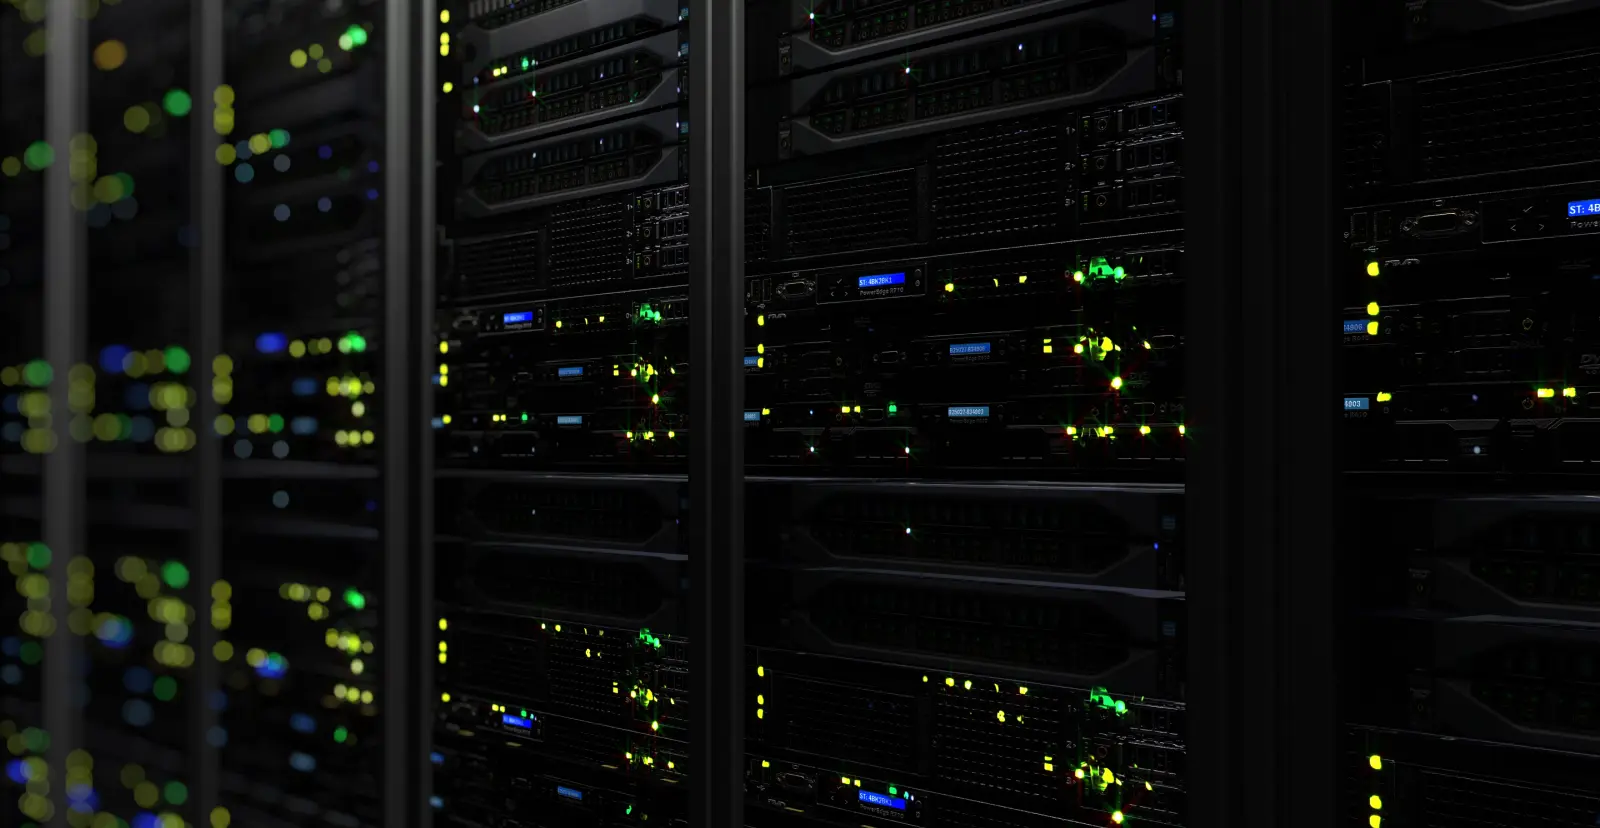 Visão interna de um data center moderno com racks de servidores iluminados por luzes LED coloridas, destacando a tecnologia de alta performance e segurança de dados.